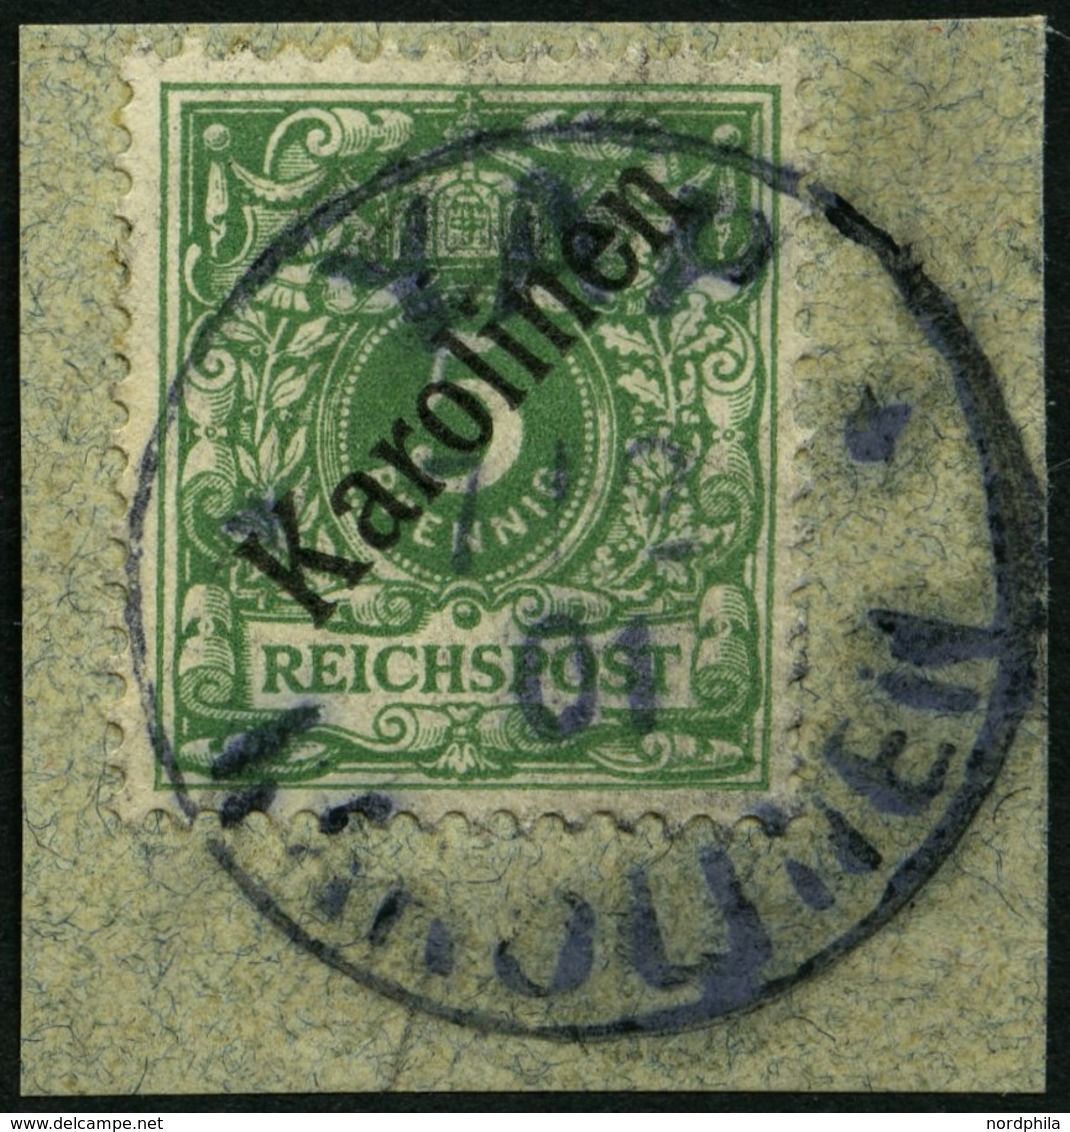 KAROLINEN 2I BrfStk, 1899, 5 Pf. Diagonaler Aufdruck, Stempel YAP, Prachtbriefstück, Gepr. Pfenninger, Mi. (750.-) - Isole Caroline